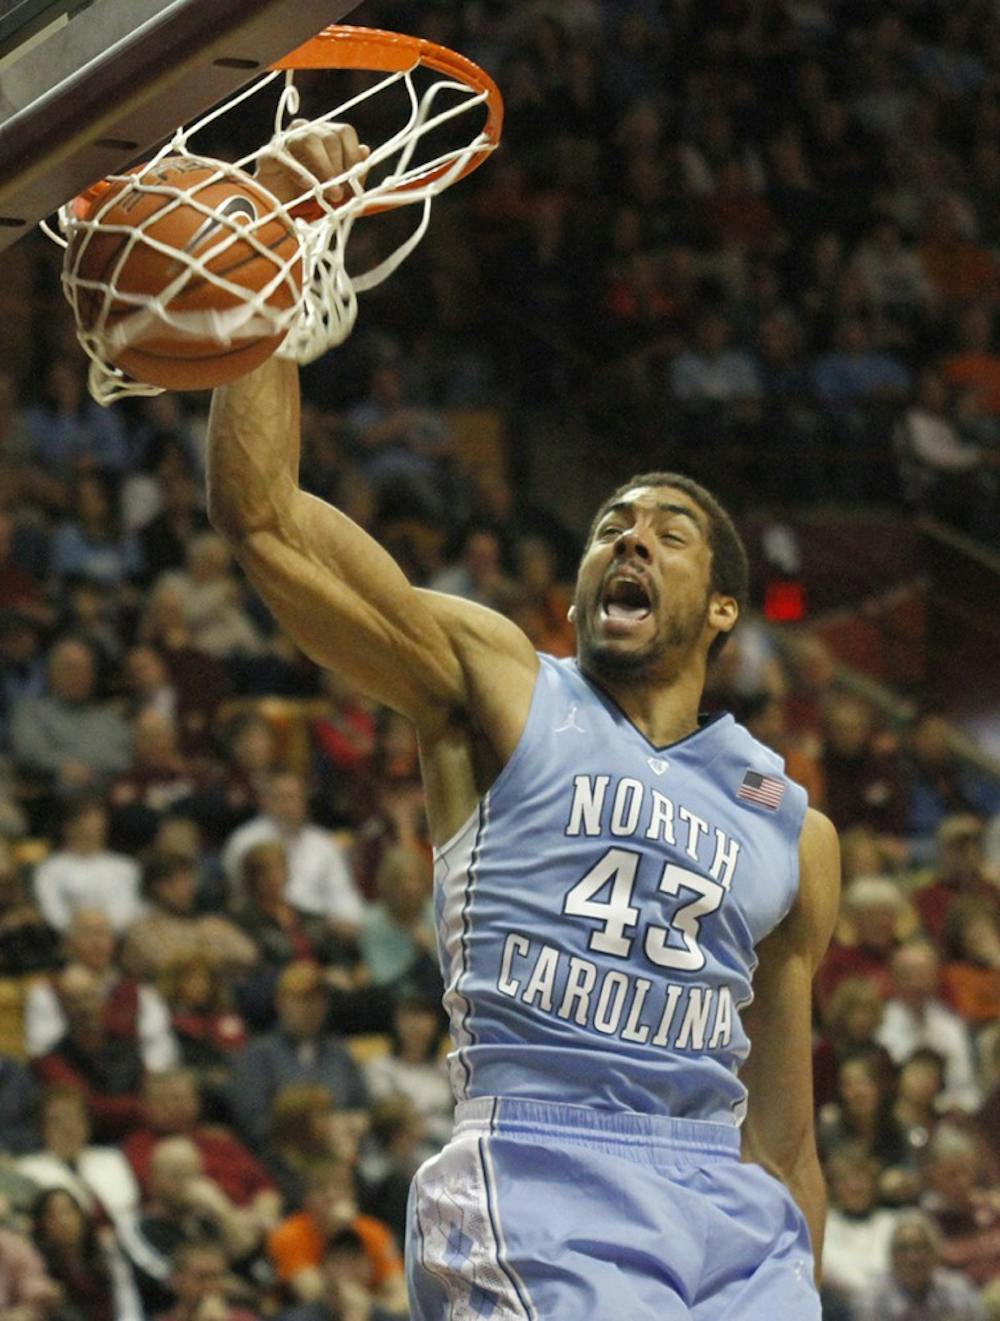  The UNC men's basketball defeated Virginia Tech 60-56.